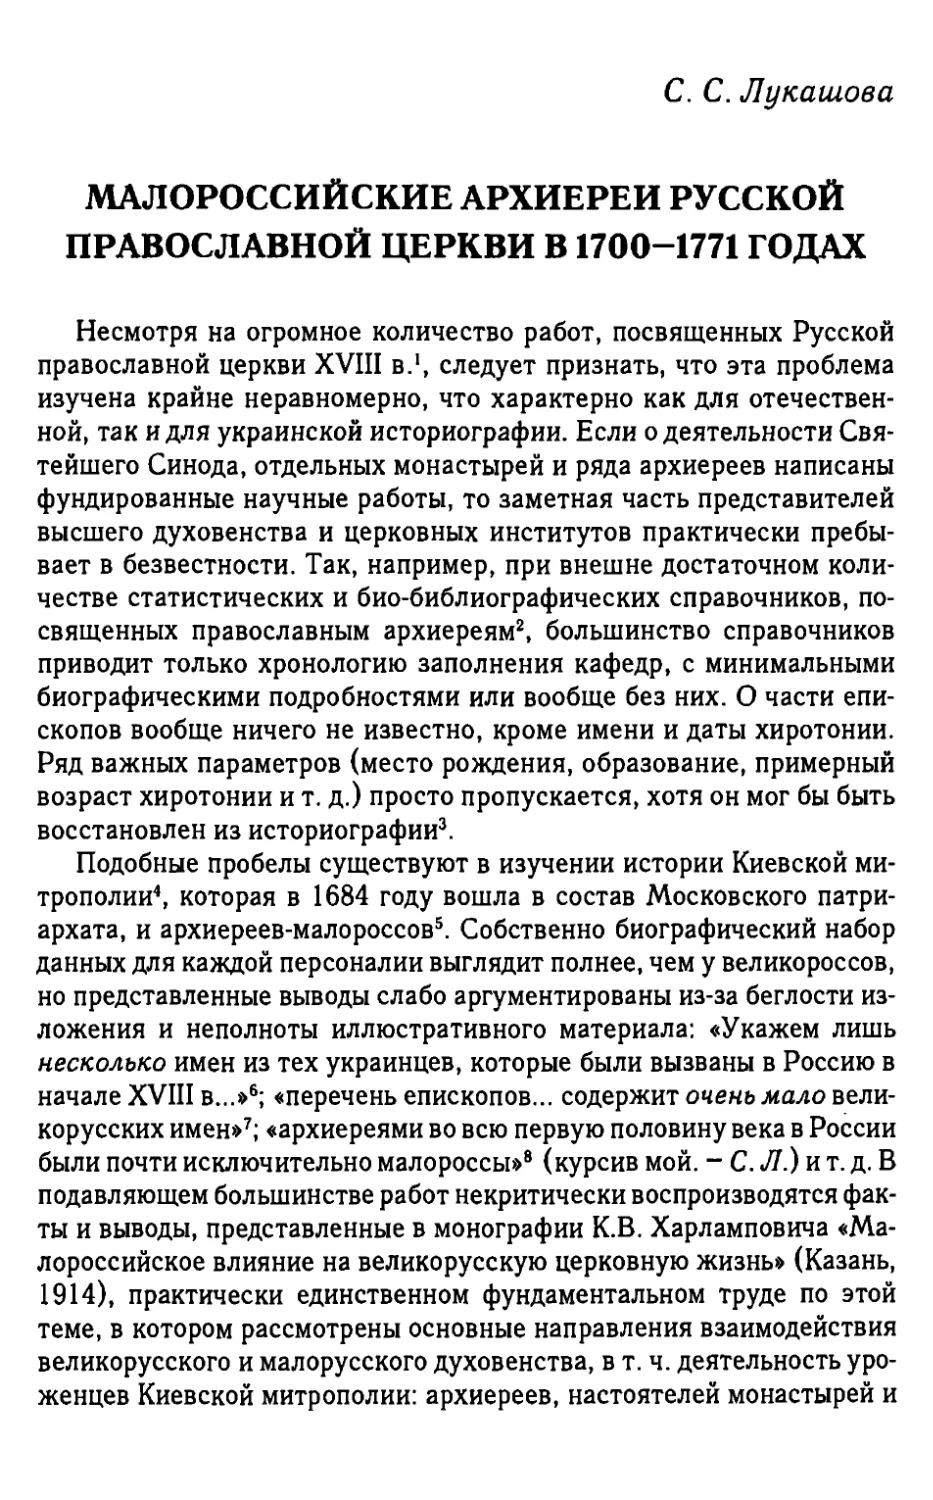 Малороссийские архиереи русской православной церкви в 1700-1771 годах. Лукашова С.С.